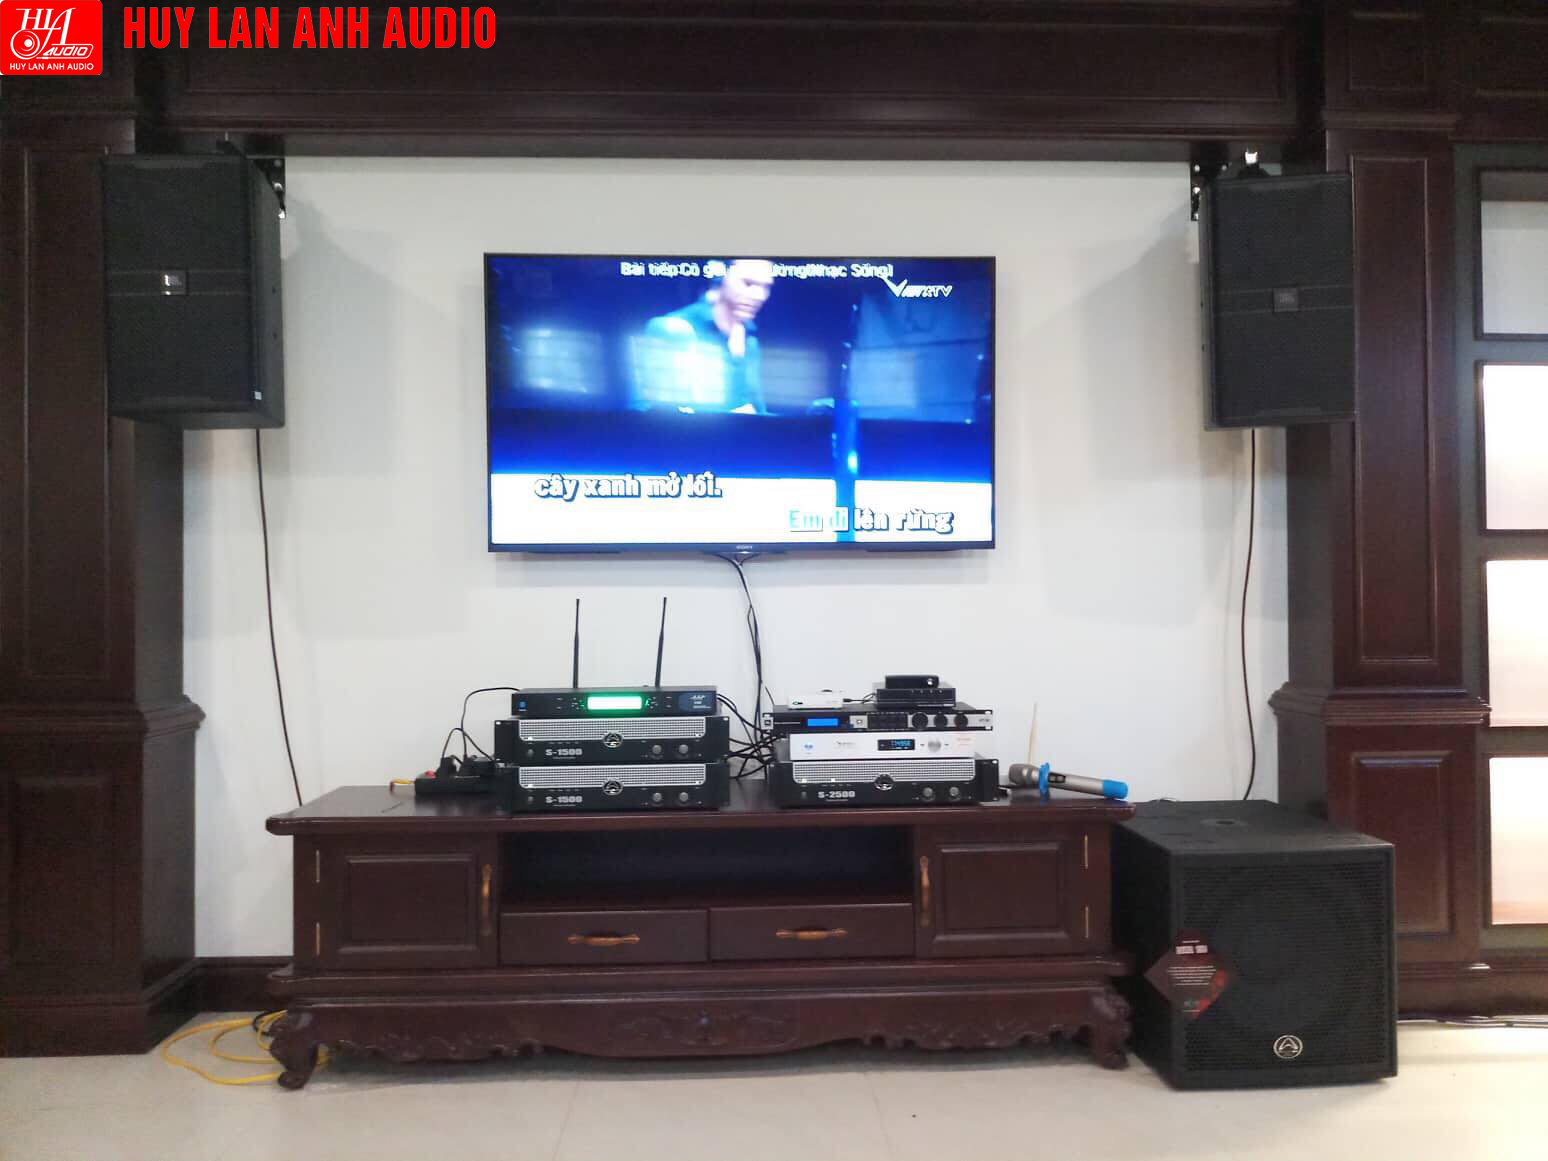 HuyLanAnh Audio trân trọng giới thiệu bộ dàn Karaoke gia đình dành cho căn phòng 35-50m2